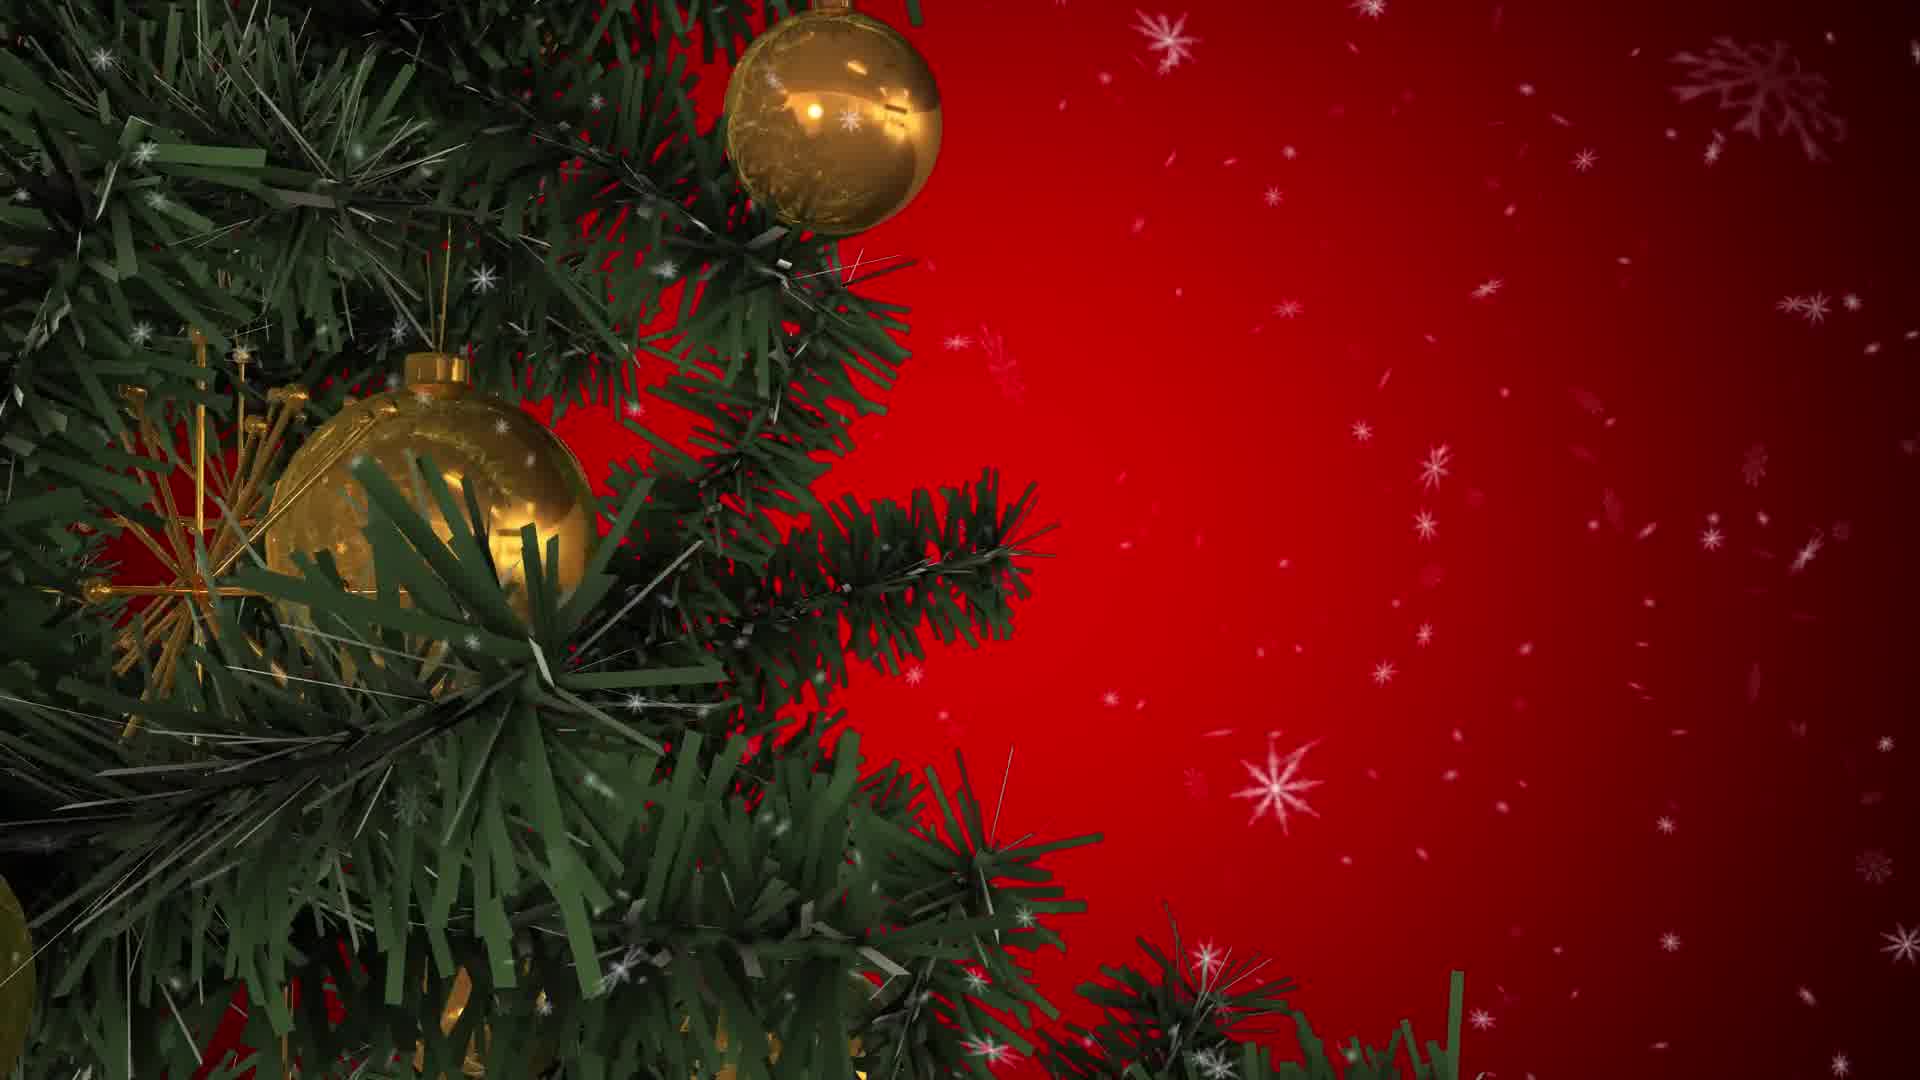 Rotating Christmas Tree Videohive 22935986 Motion Graphics Image 10